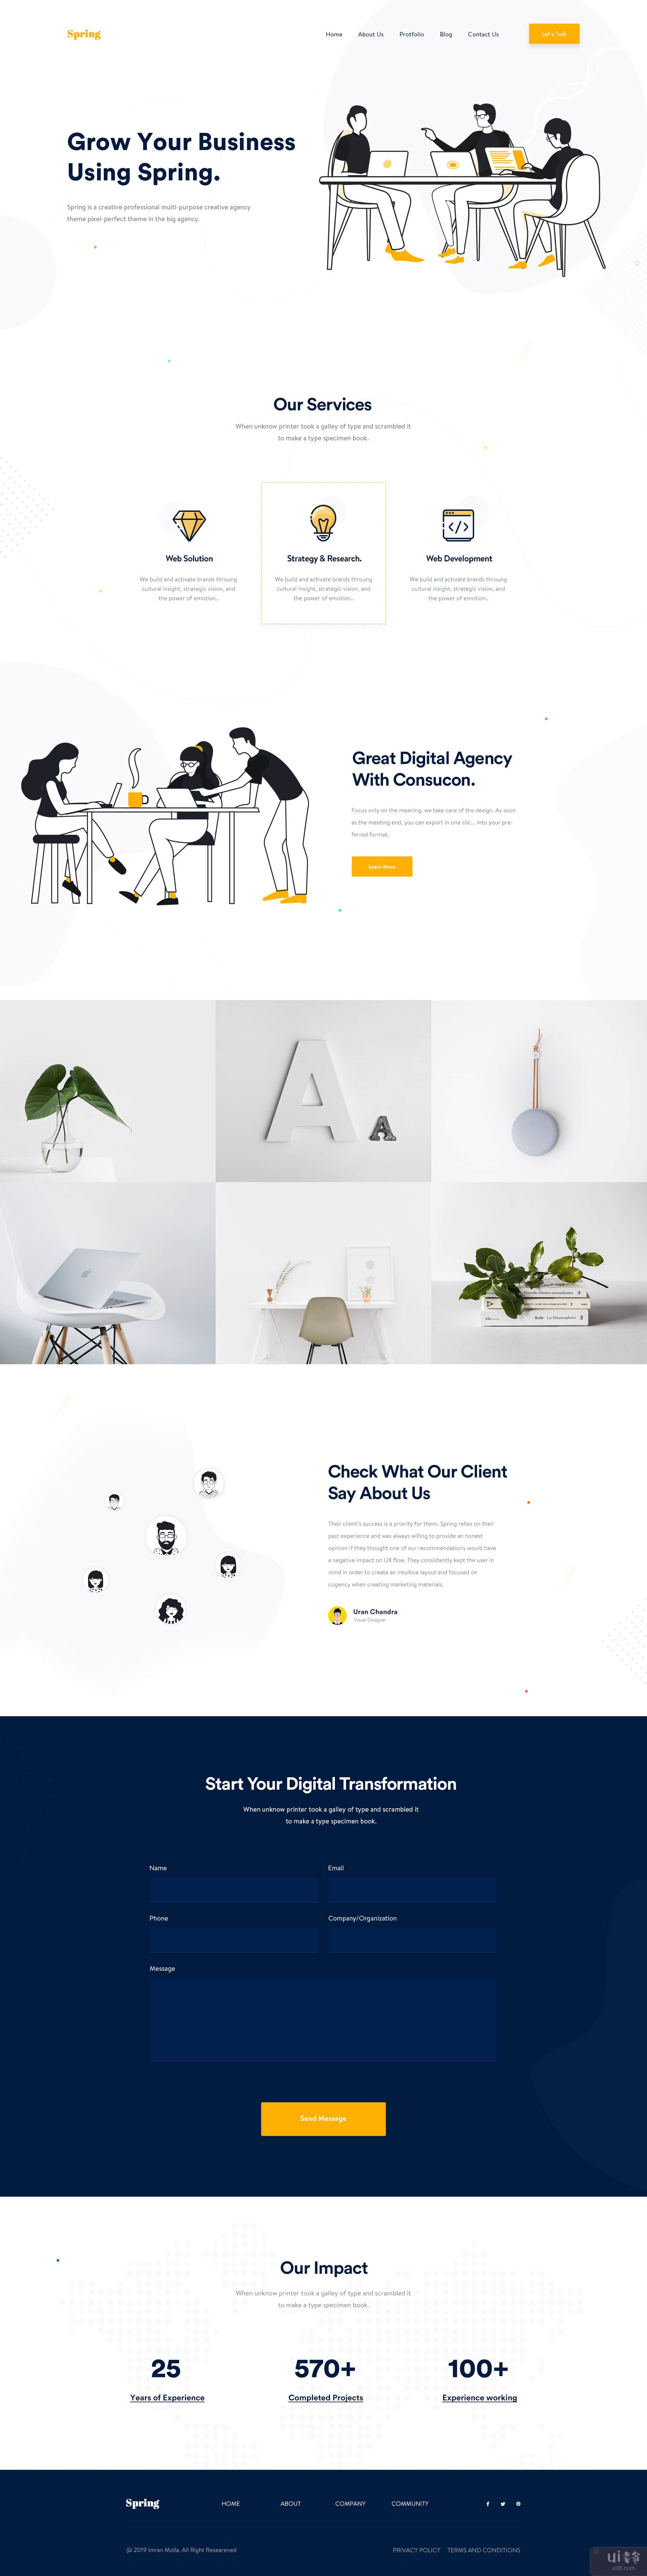 设计机构-首页V6(Design Agency - Homepage V6)插图